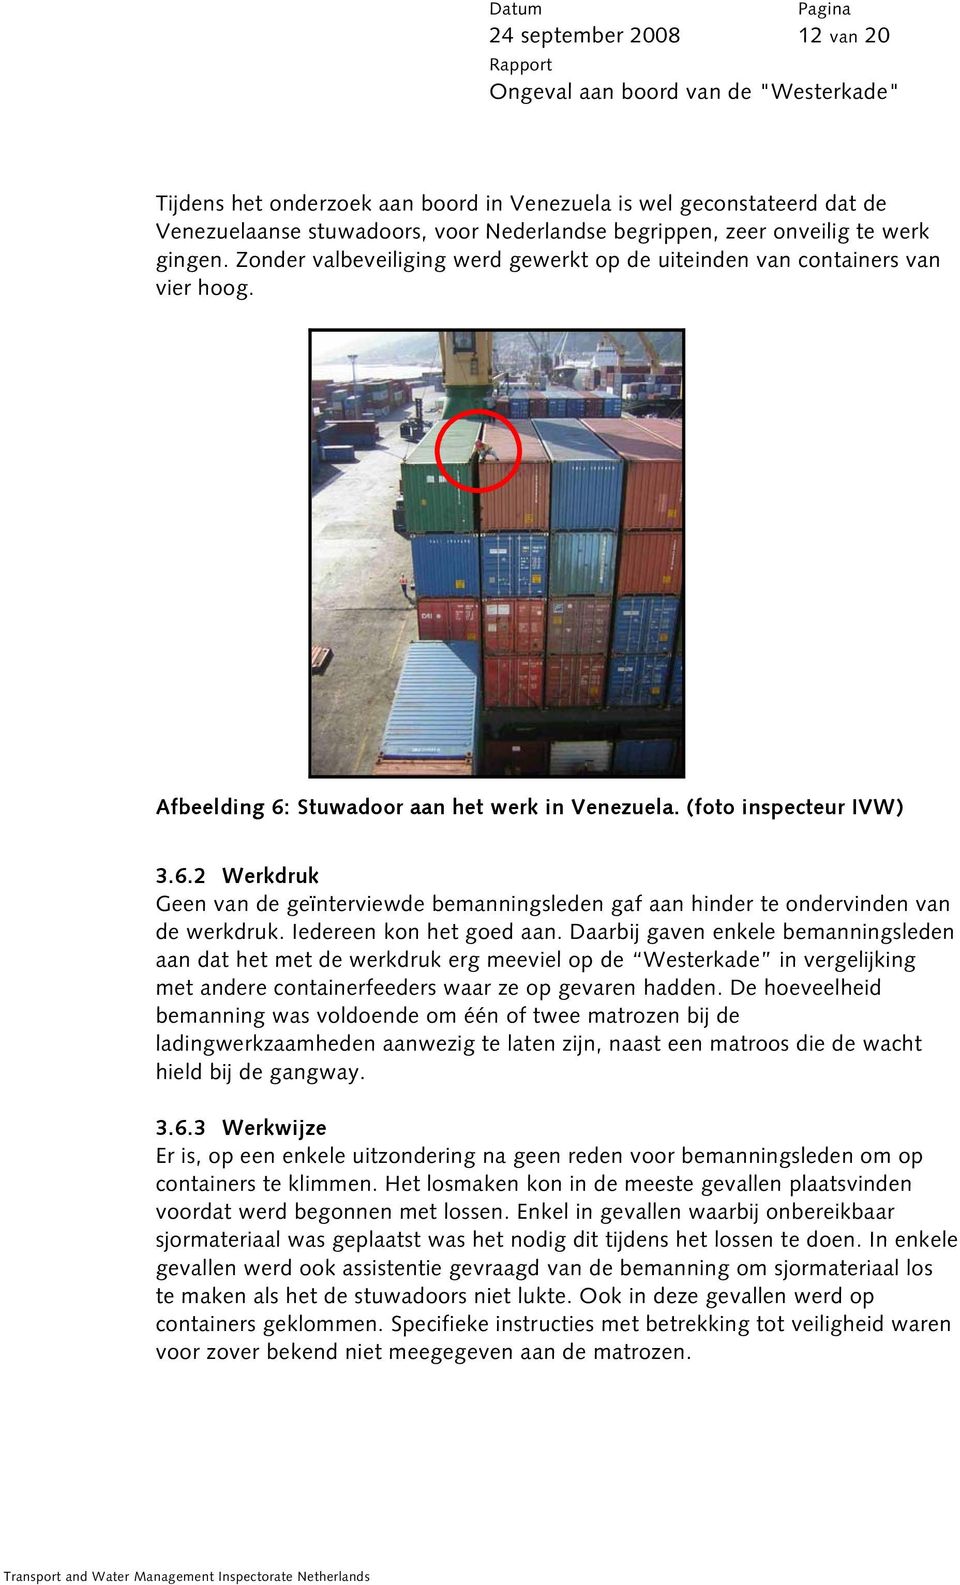 Iedereen kon het goed aan. Daarbij gaven enkele bemanningsleden aan dat het met de werkdruk erg meeviel op de Westerkade in vergelijking met andere containerfeeders waar ze op gevaren hadden.